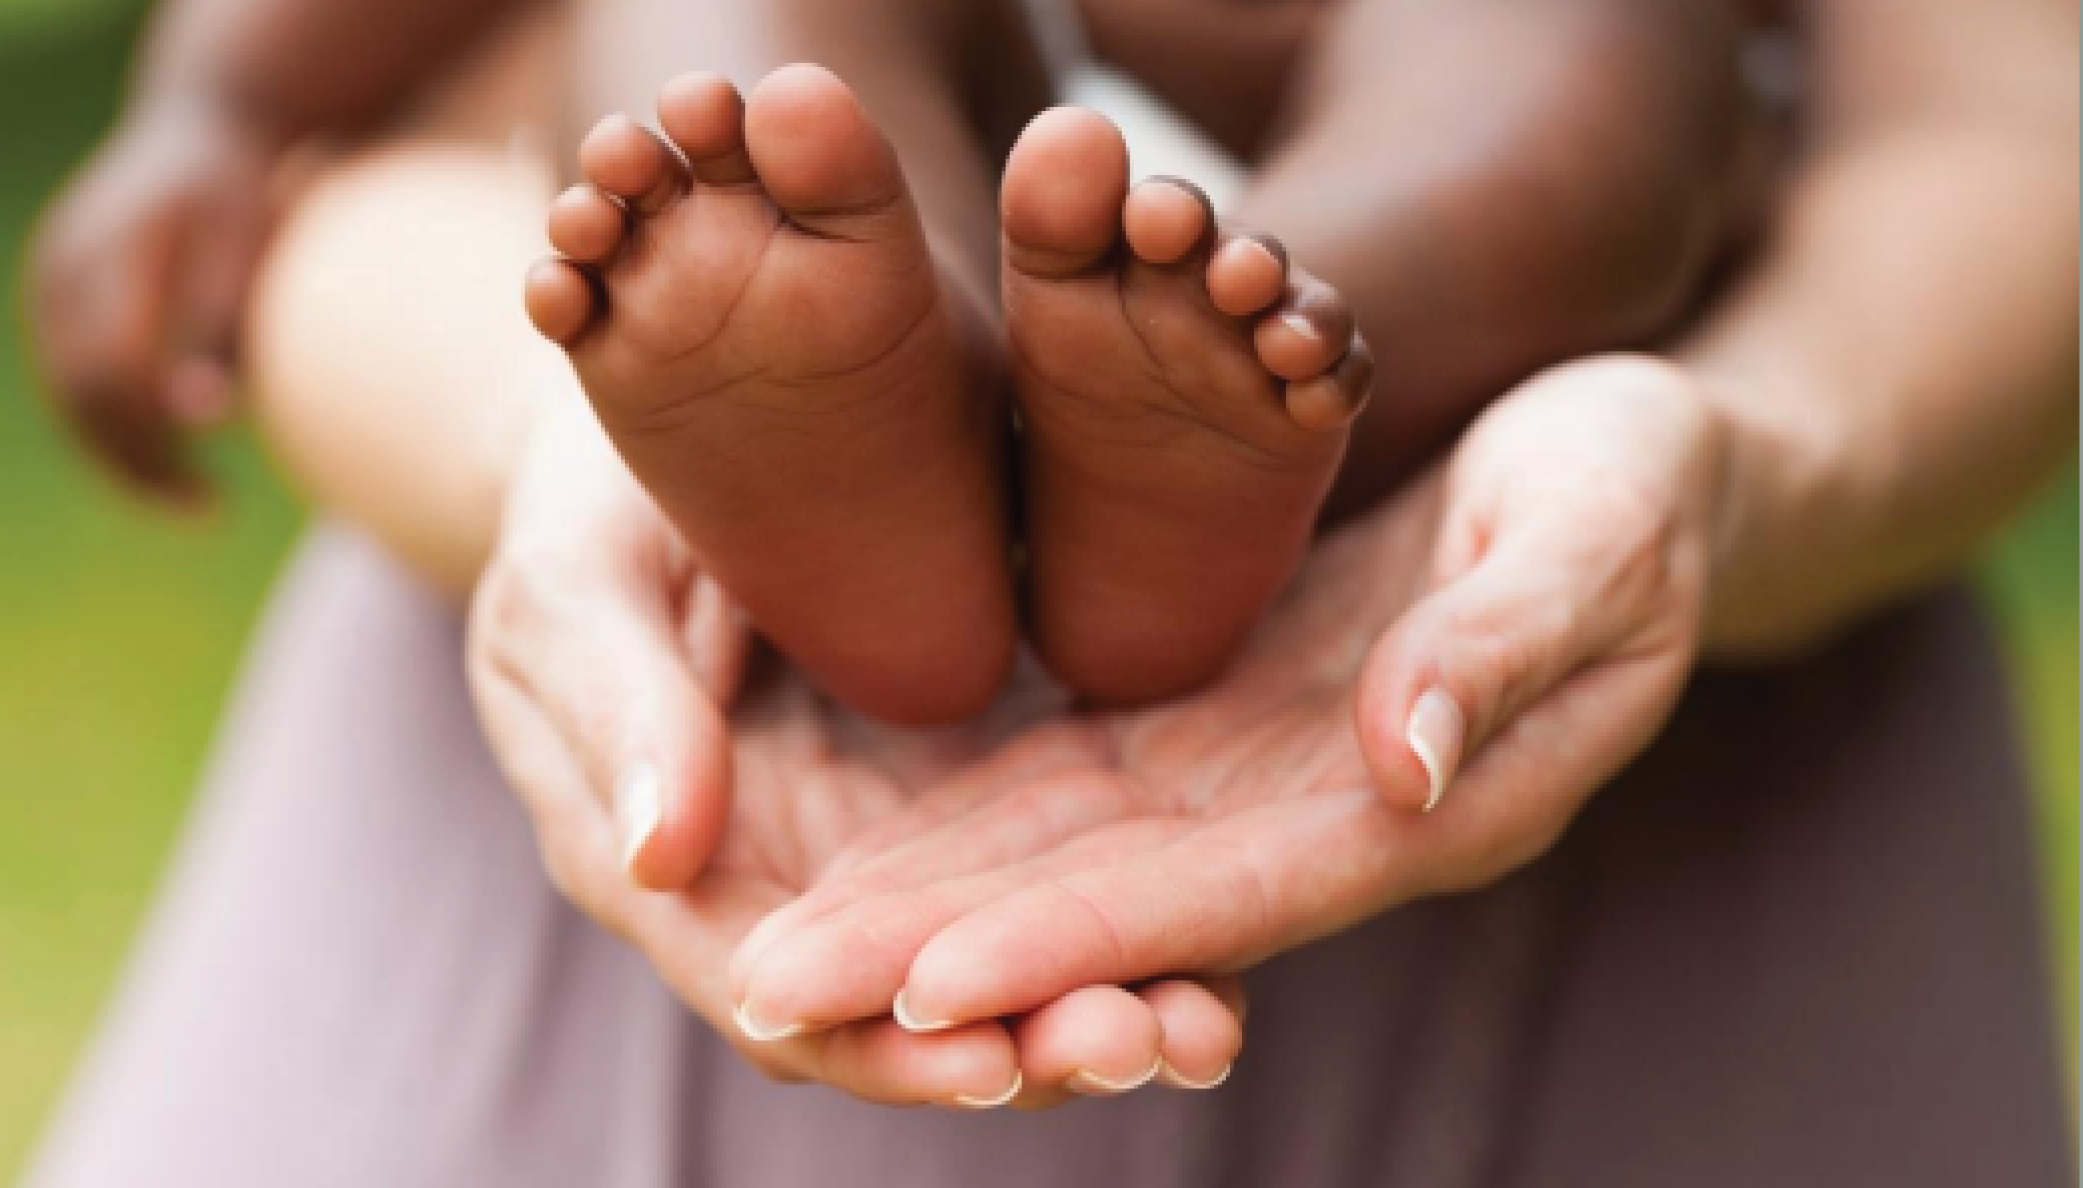 Baby Feet in Hands